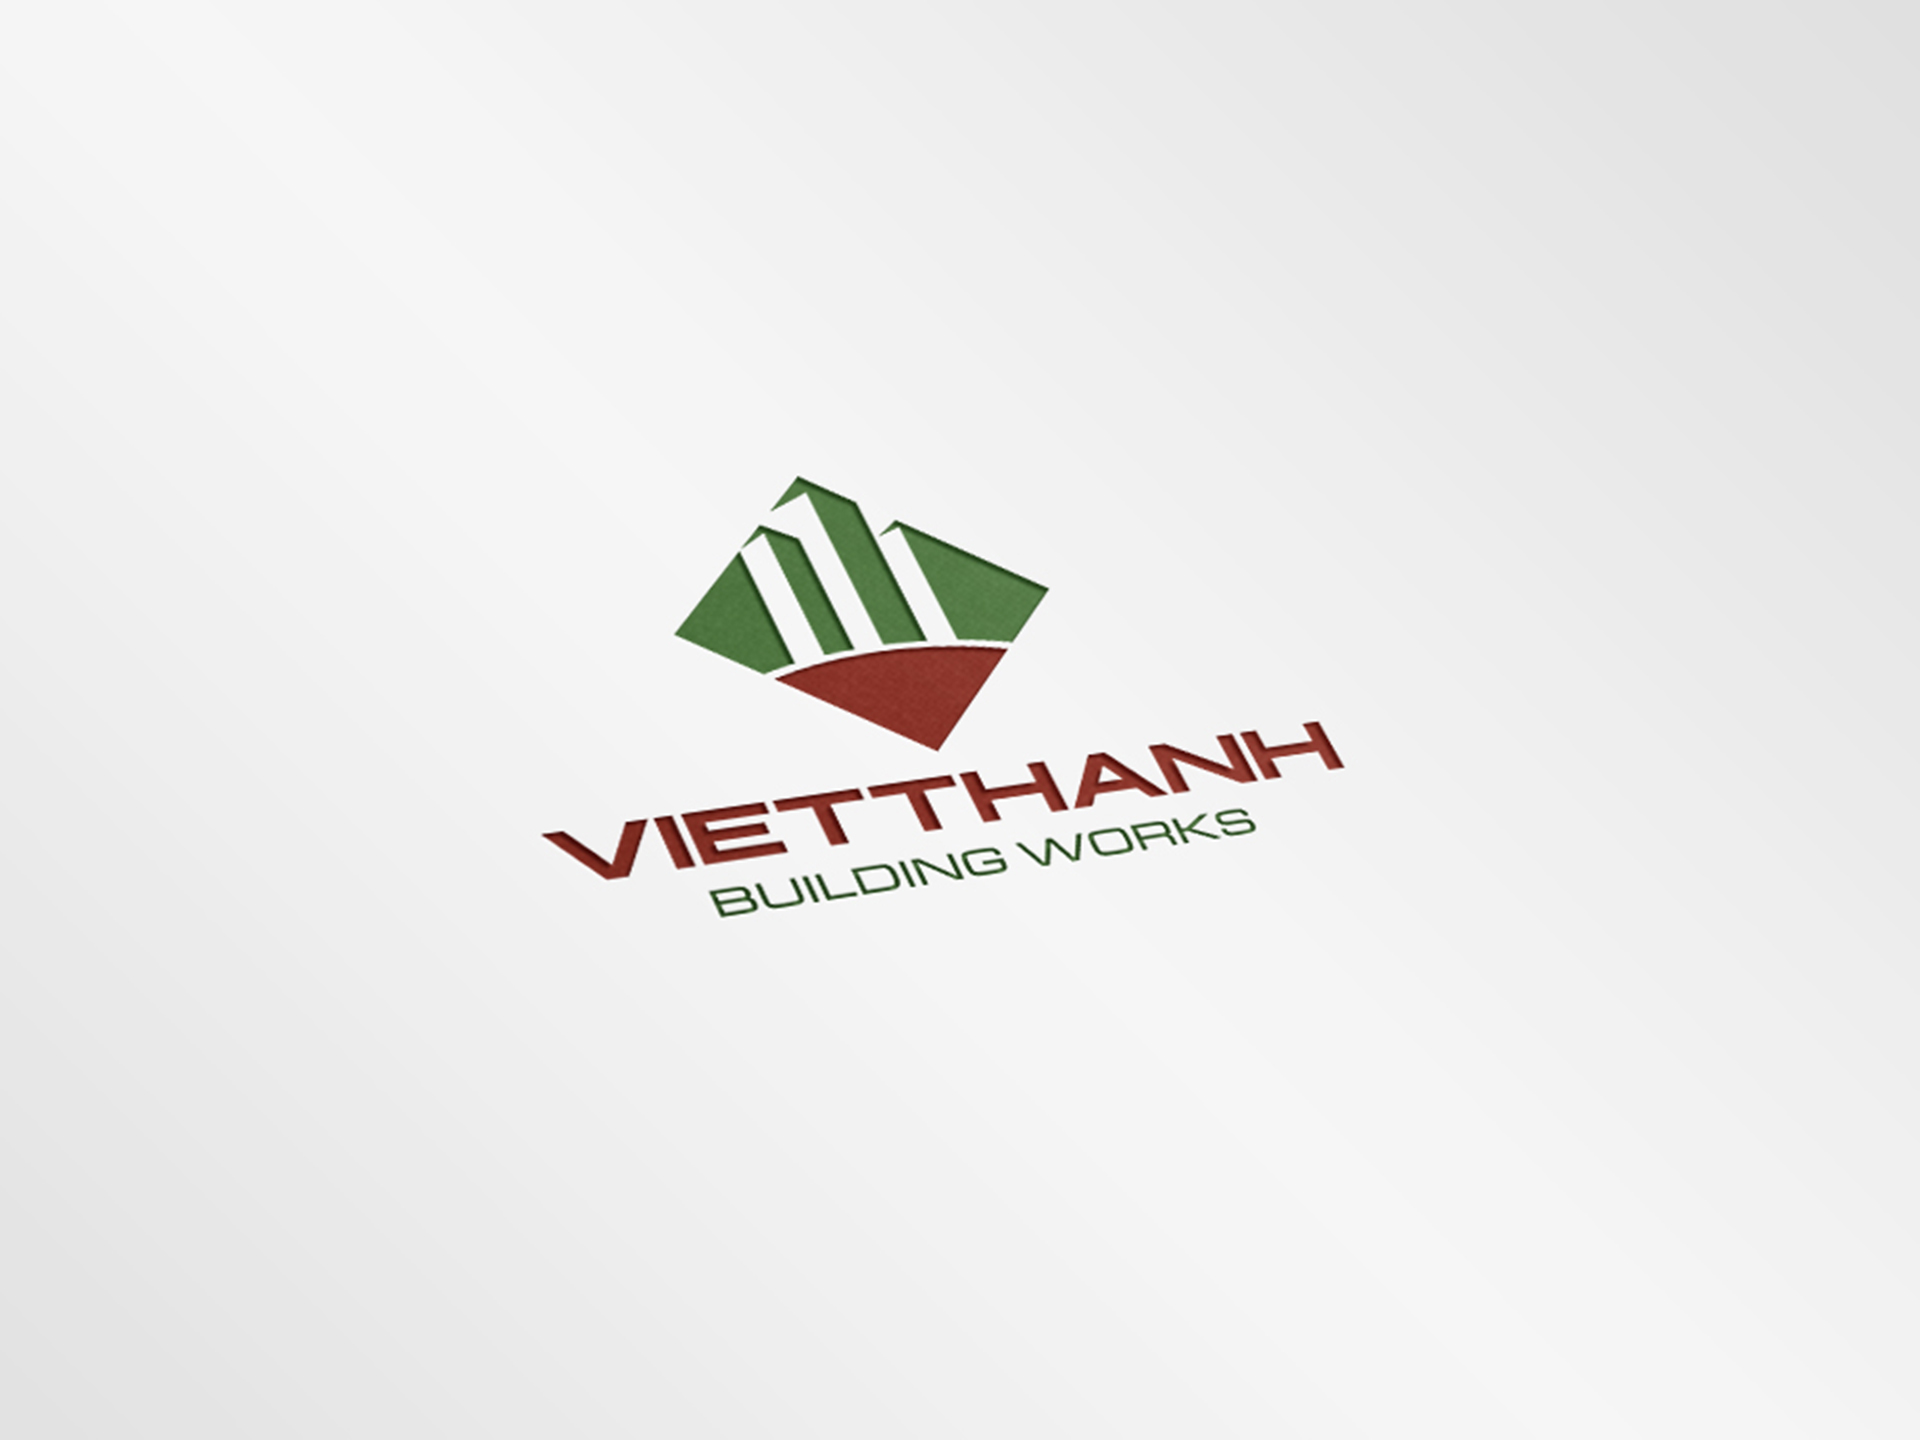 Thiết kế logo và bộ nhận diện thương hiệu cơ bản Công ty bê tông Việt Thành tại Hà Giang